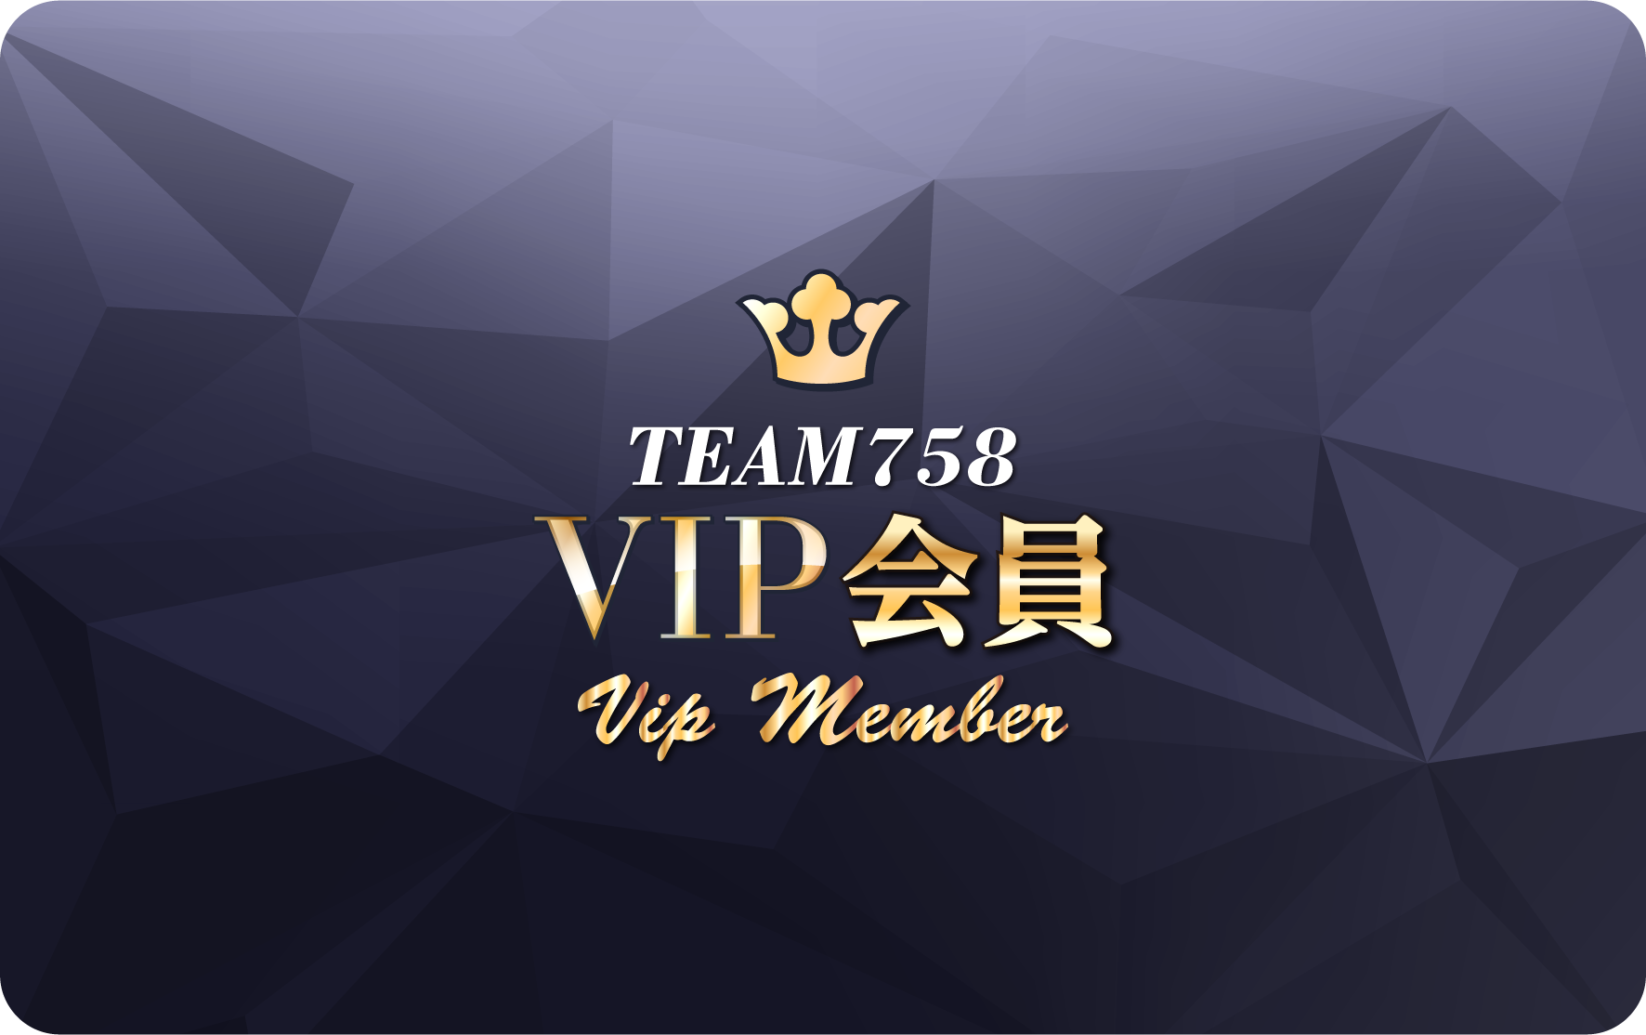 チーム758 VIP会員【2021-2022シーズン年会費】